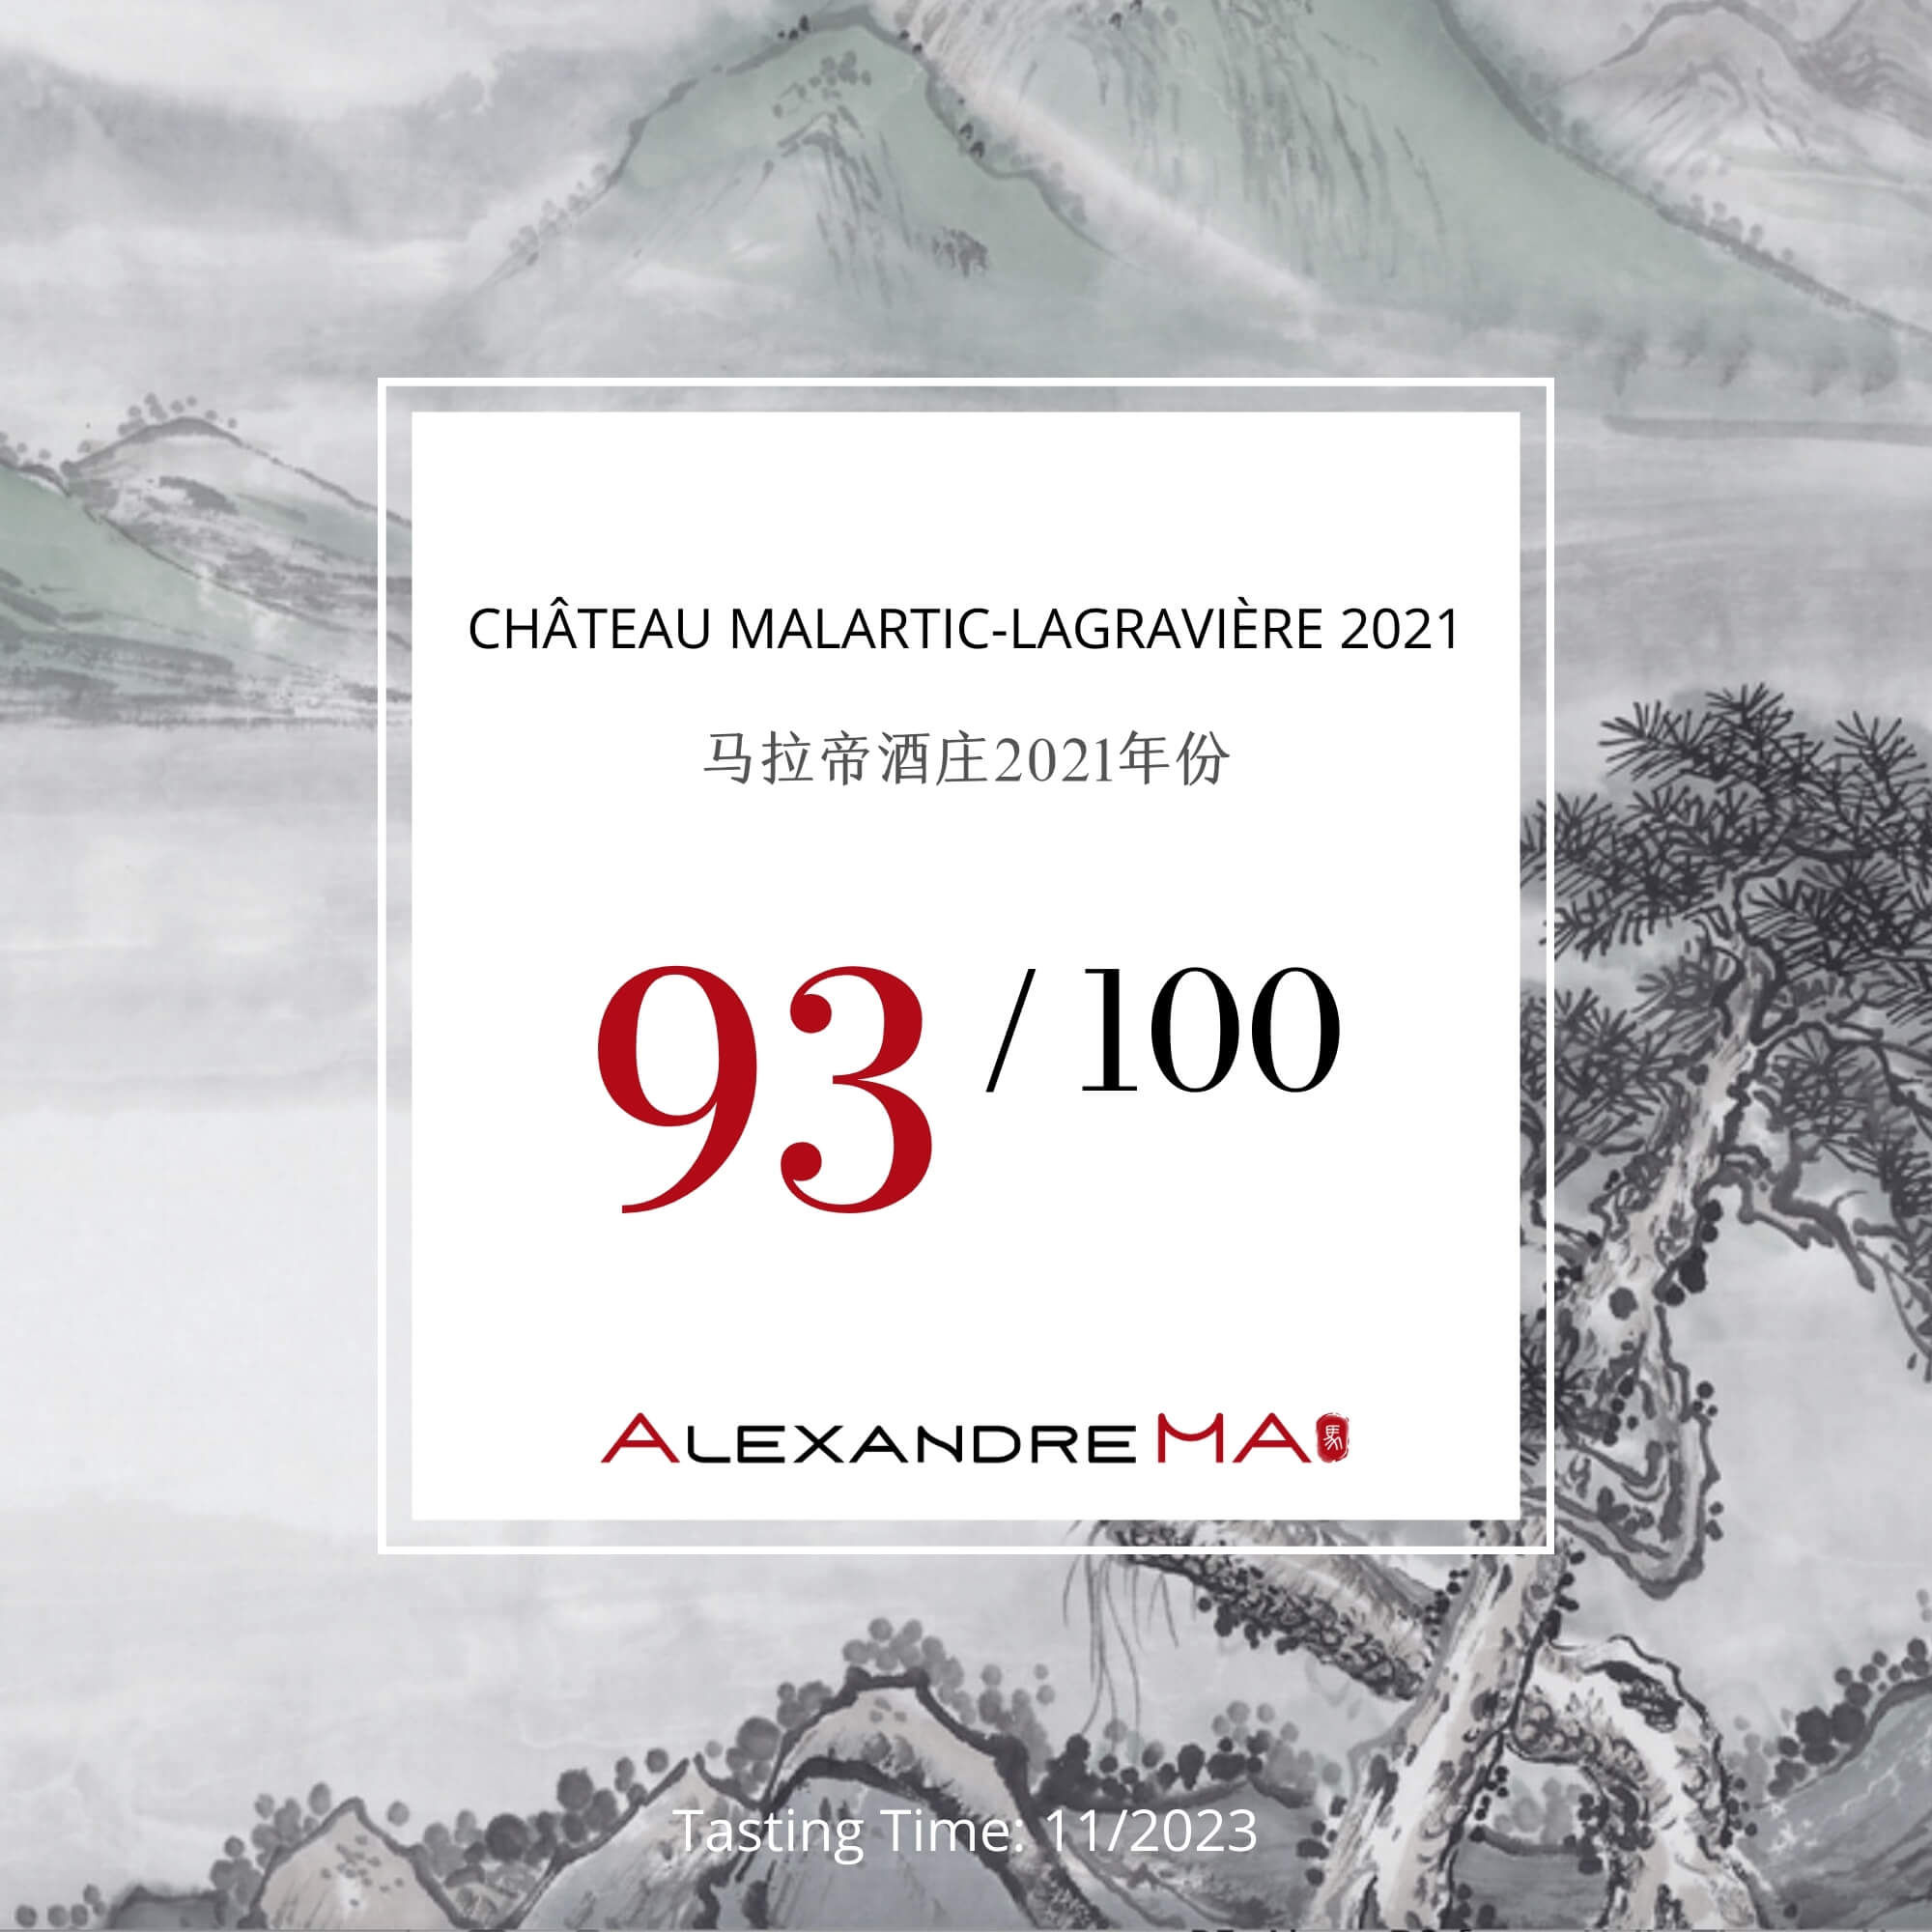 Château Malartic-Lagravière 2021 - Alexandre MA